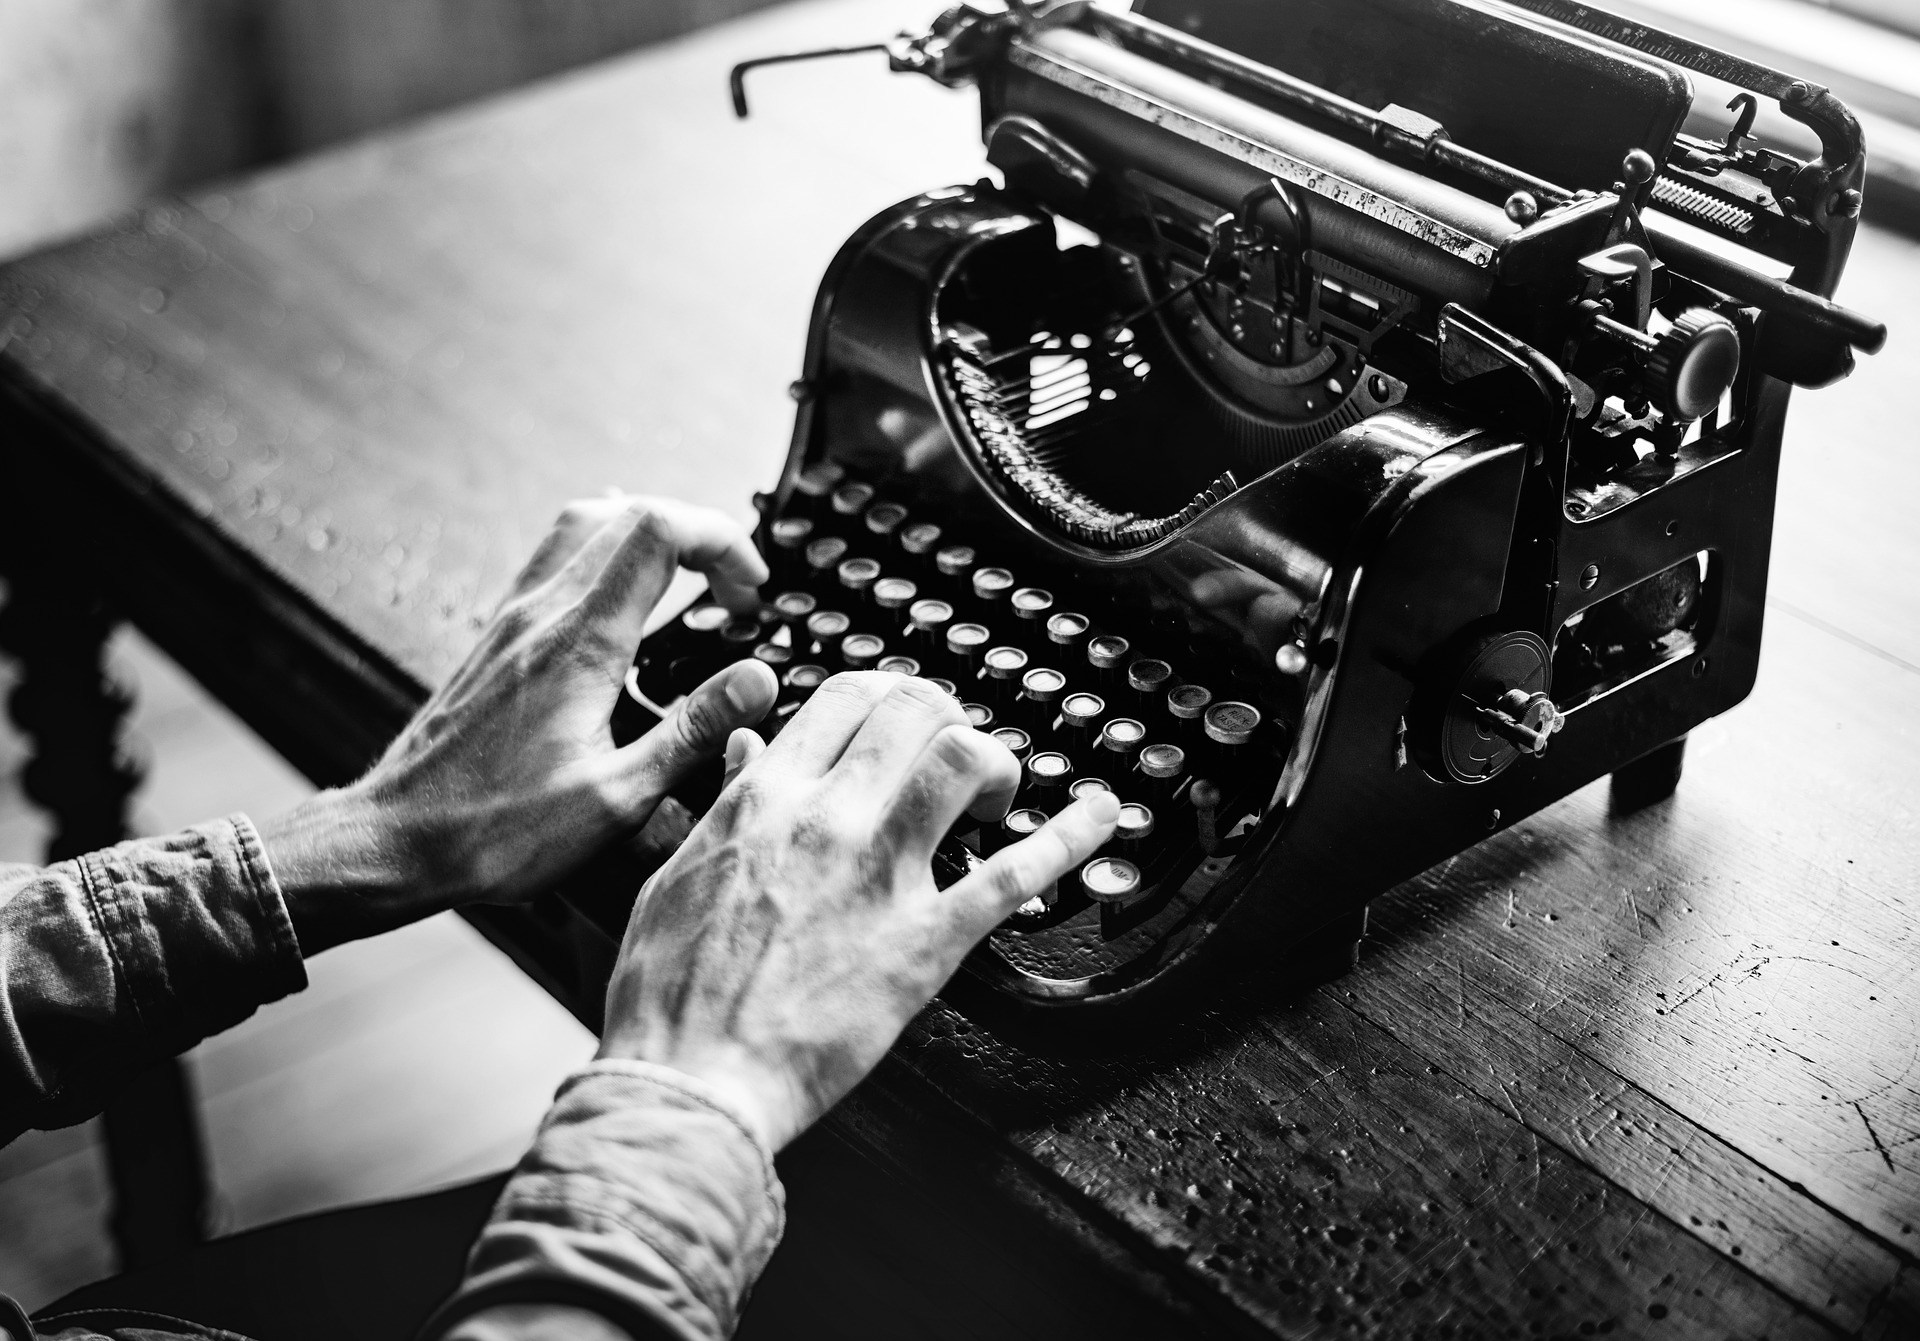 Schreibmaschinen sterben aus